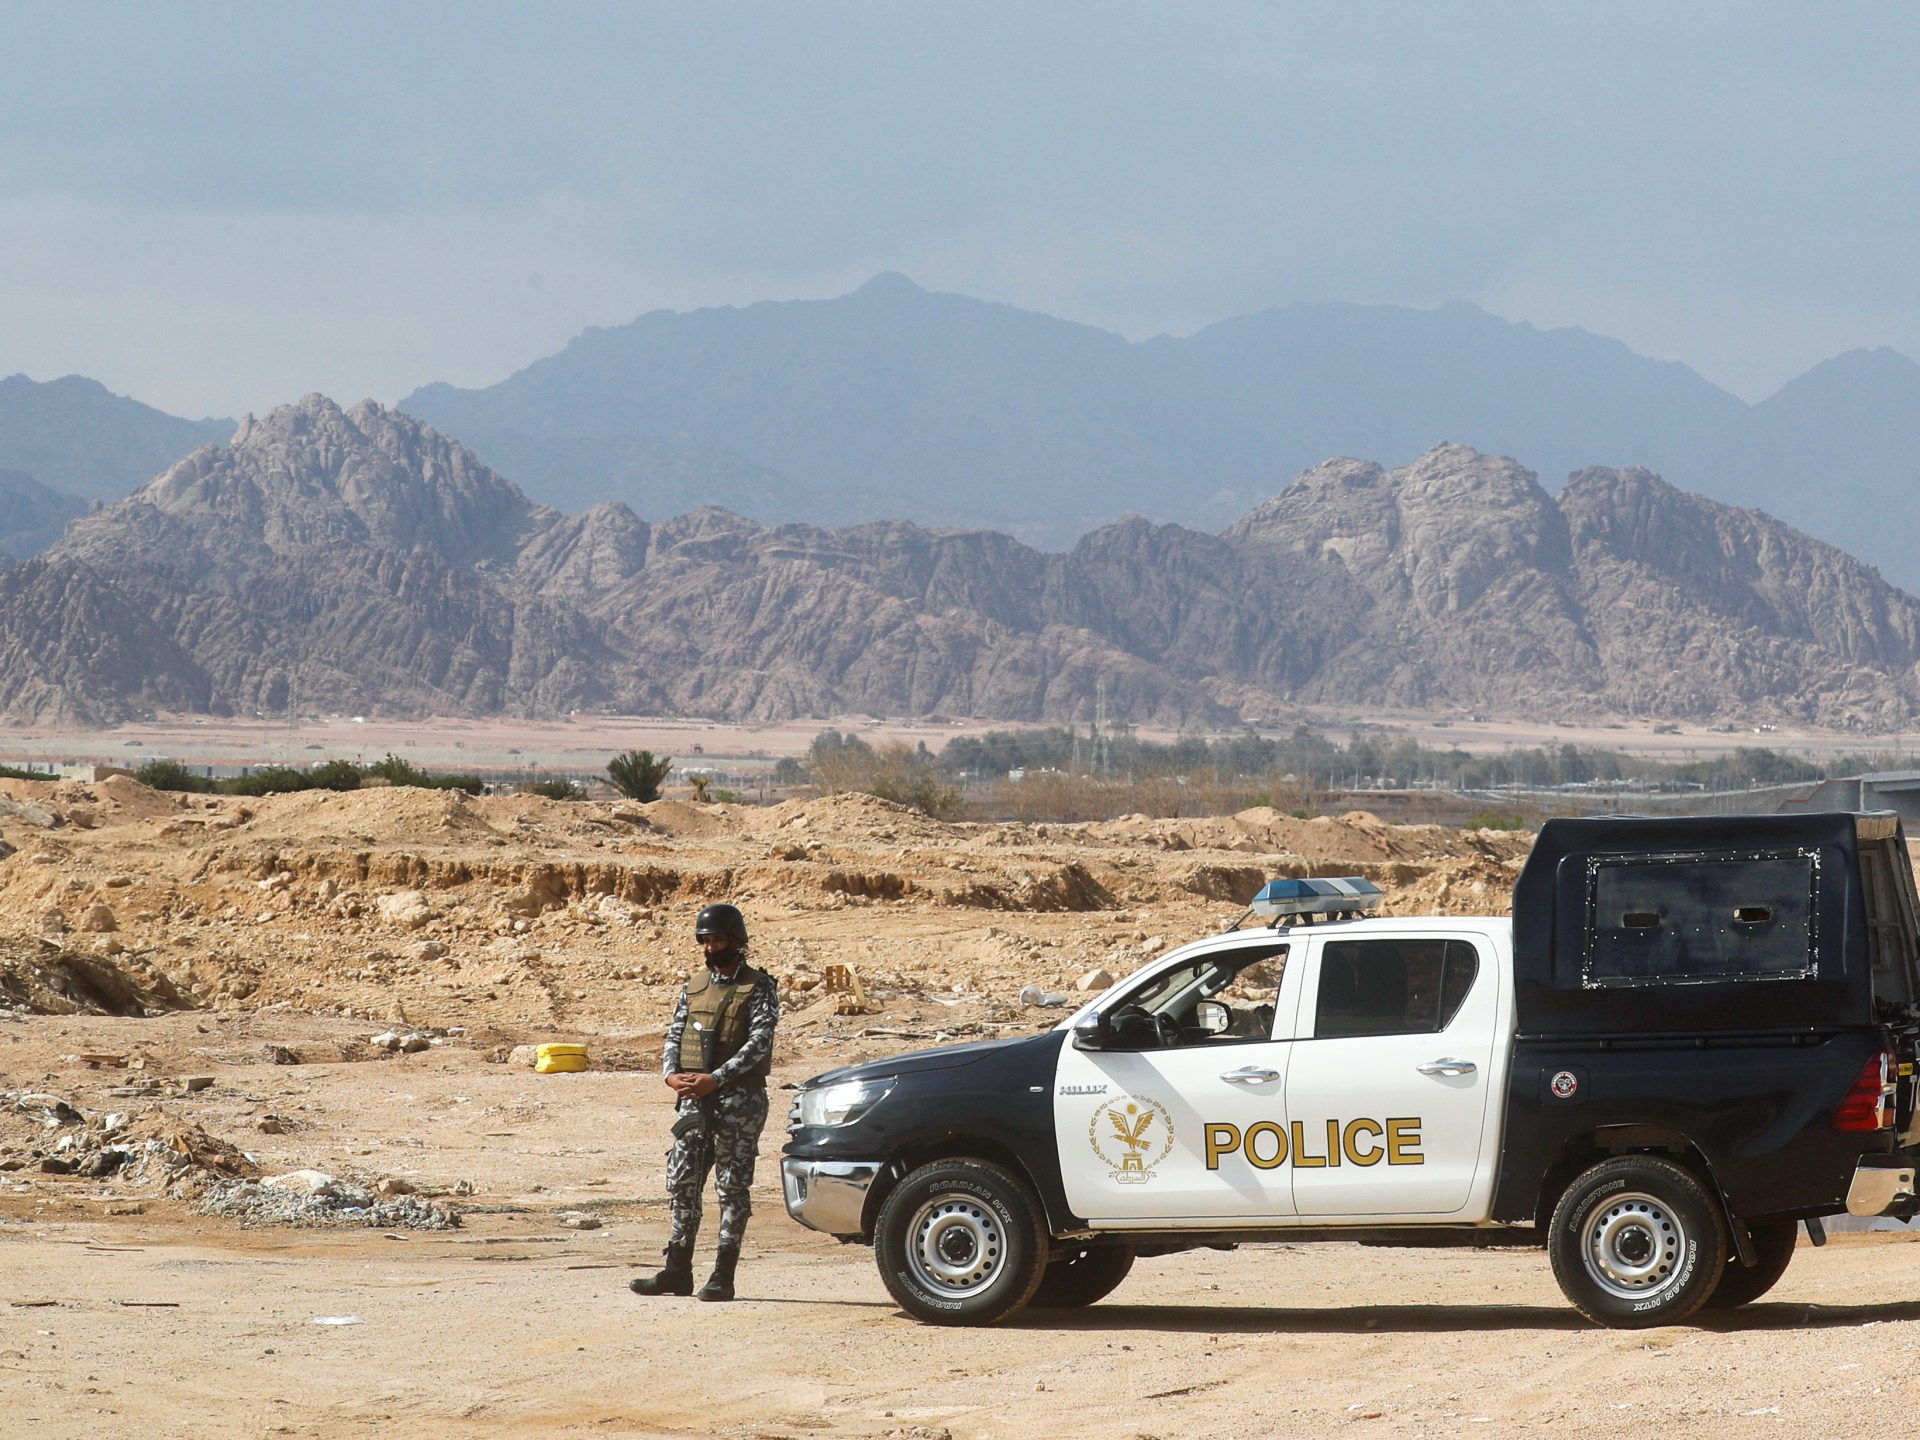 انفجار قبالة سواحل جنوب سيناء وأنباء عن إسقاط مسيرة | أخبار – البوكس نيوز